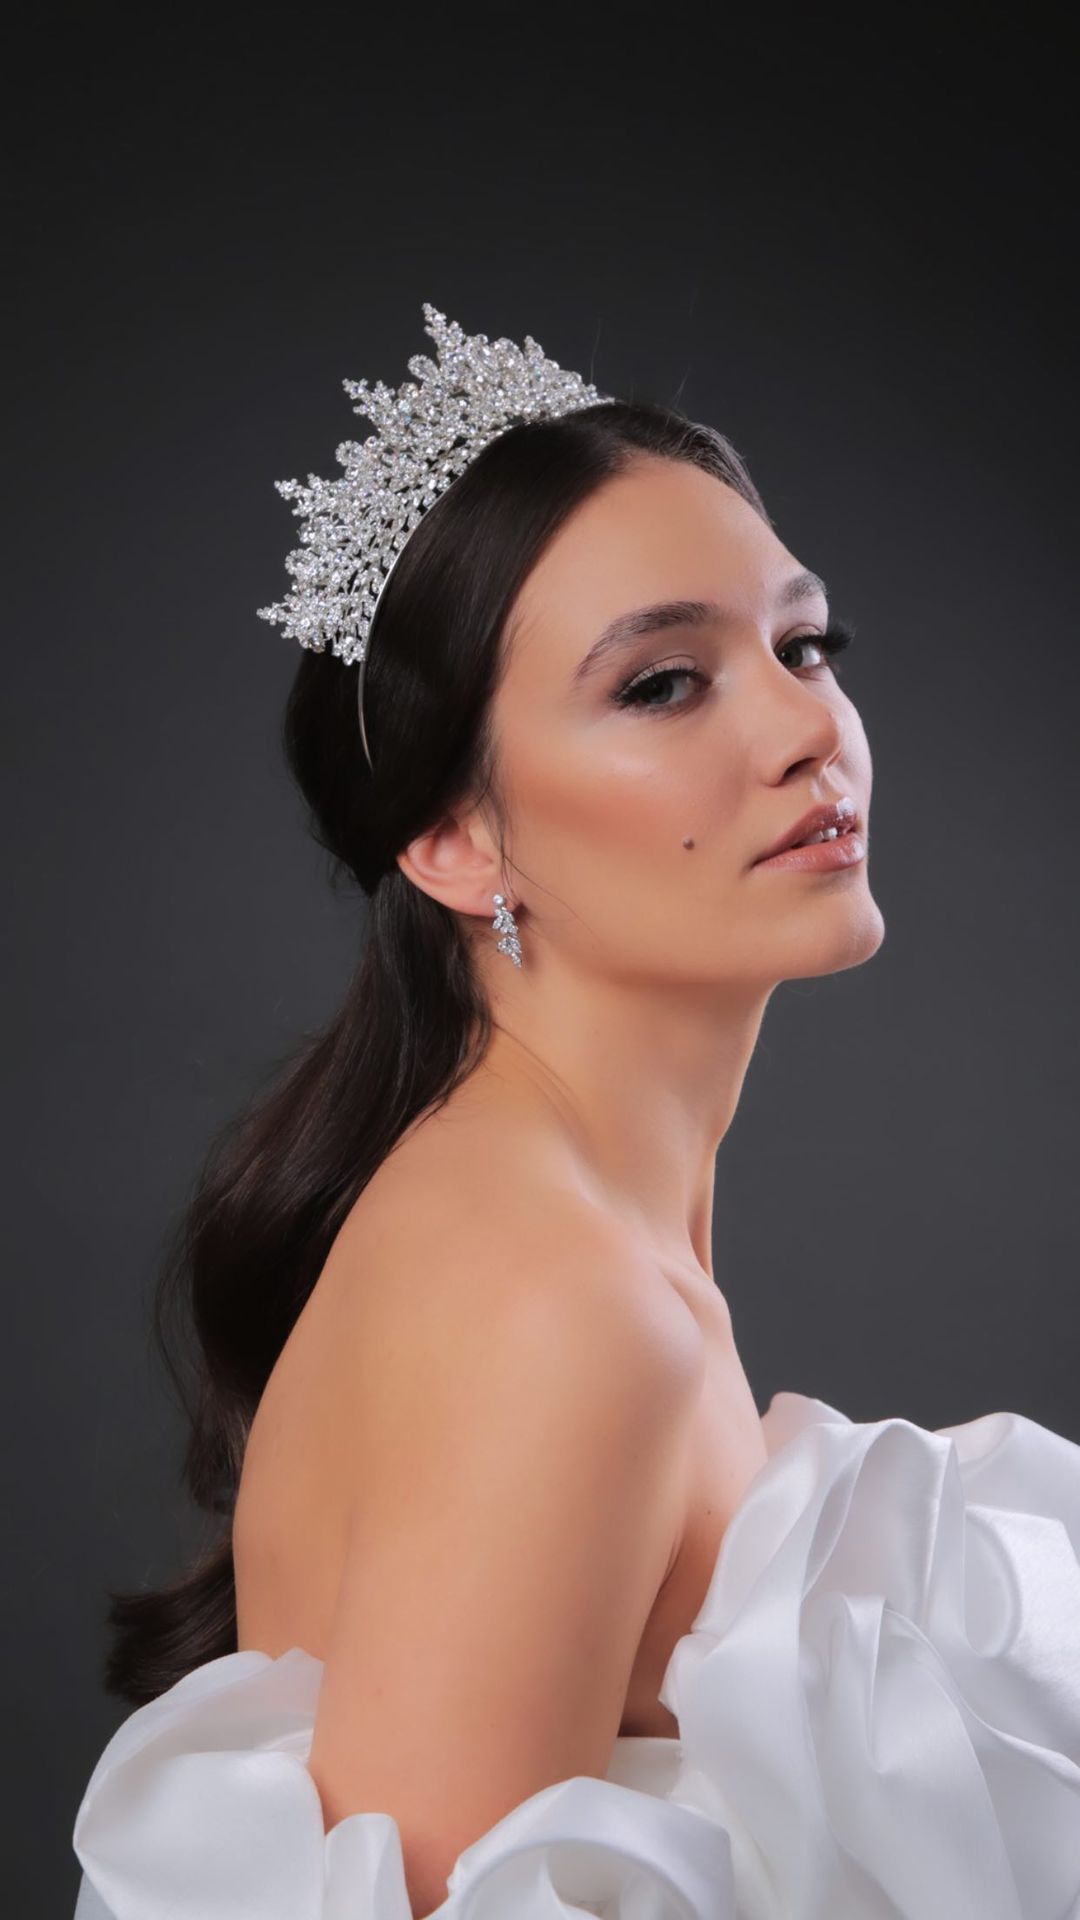 Entre las más hermosas coronas nupciales se encuentra el tocado de novia Freya Crown, una tiara de bodas realizada con los mejores materiales y cristales de zirconia - Bridal Room Boutique Venezuela